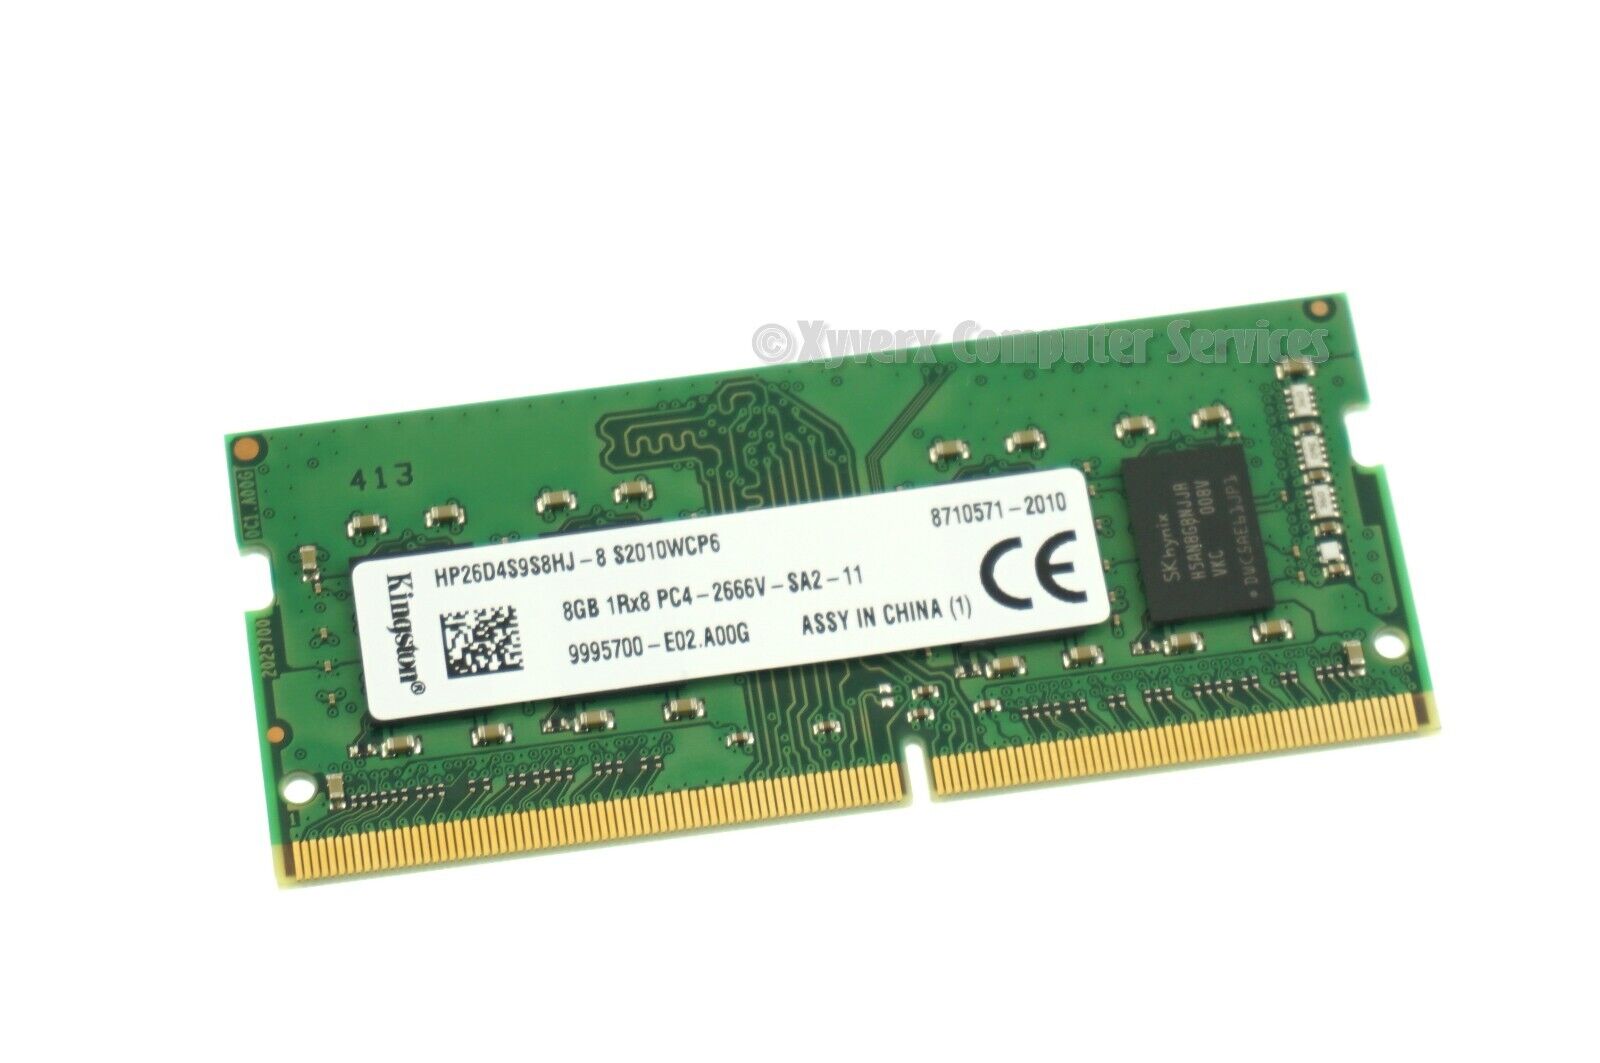 HP26D4S9S8HJ-8 GENUINE KINGSTON LAPTOP MEMORY 8GB DDR4 PC4-2666V (CA612)